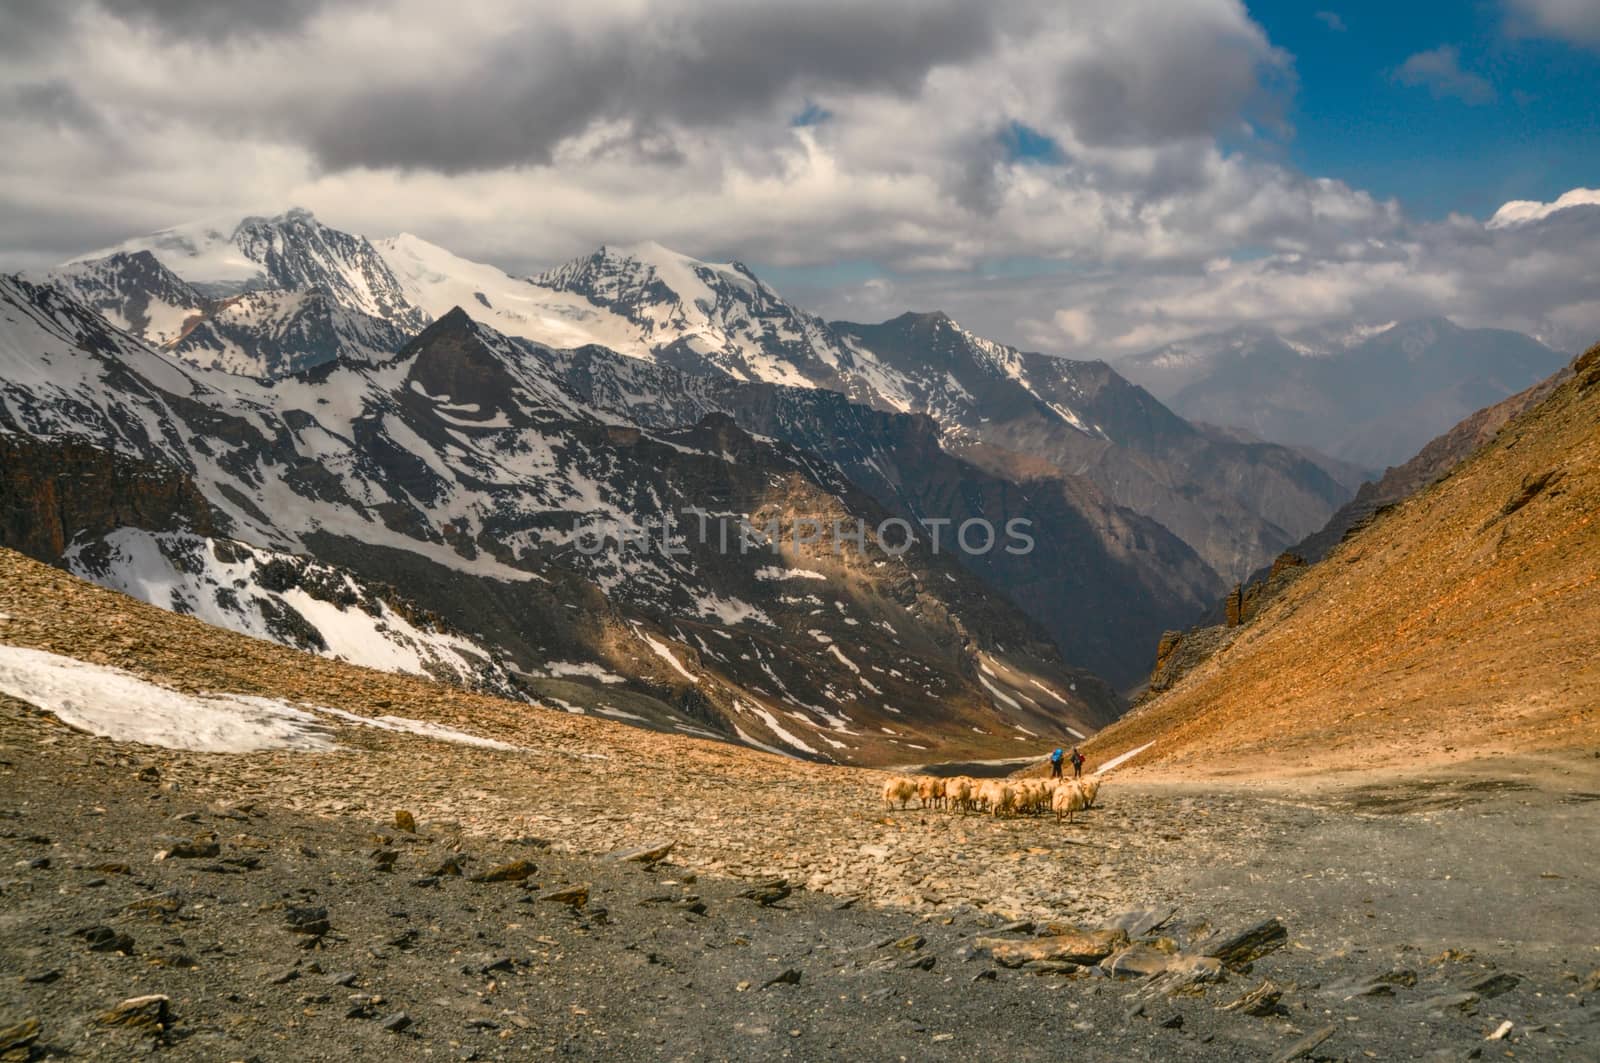 Sheep in Himalayas by MichalKnitl